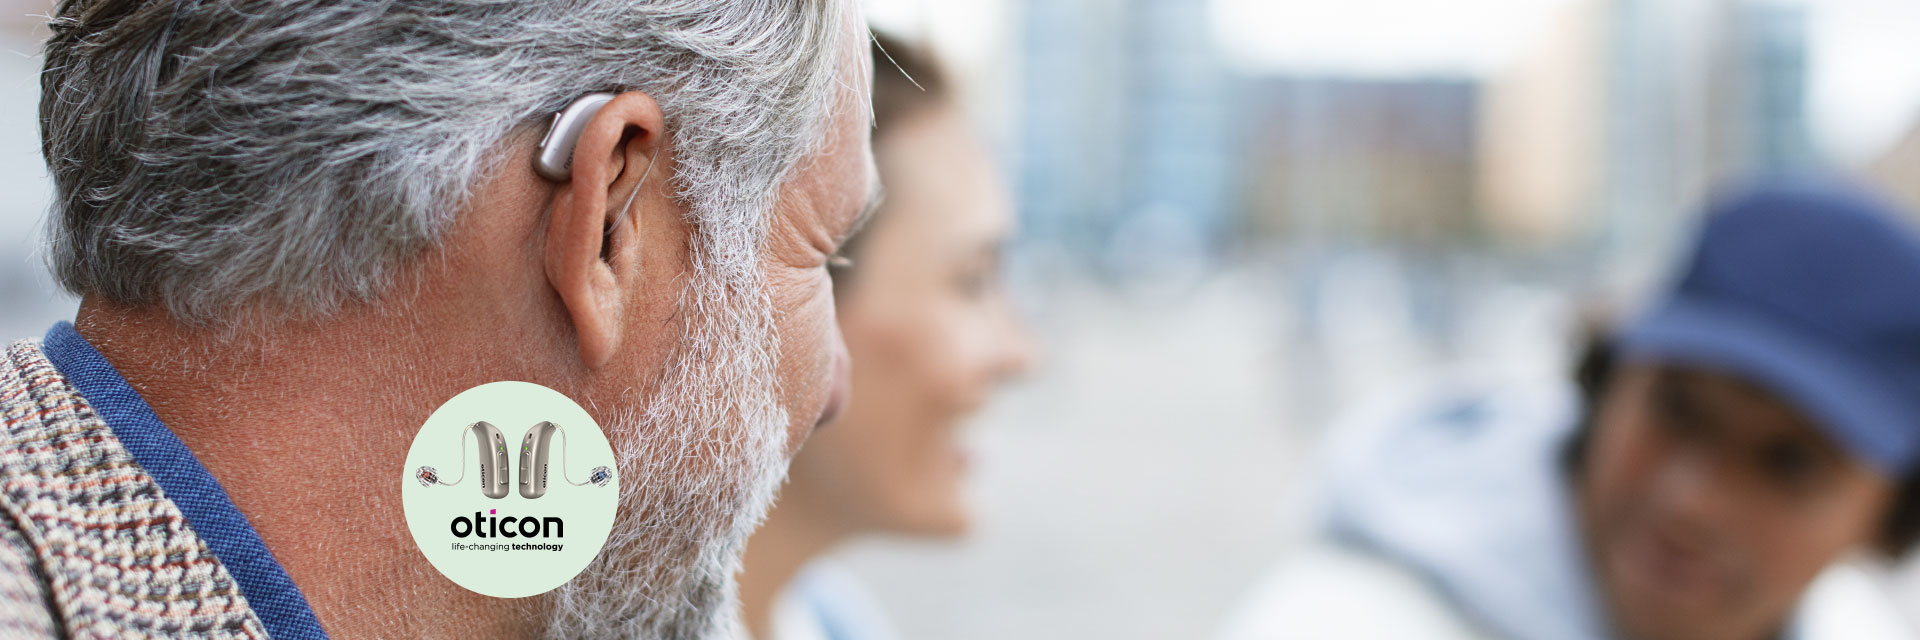 L’image montre un homme avec un appareil auditif derrière l’oreille